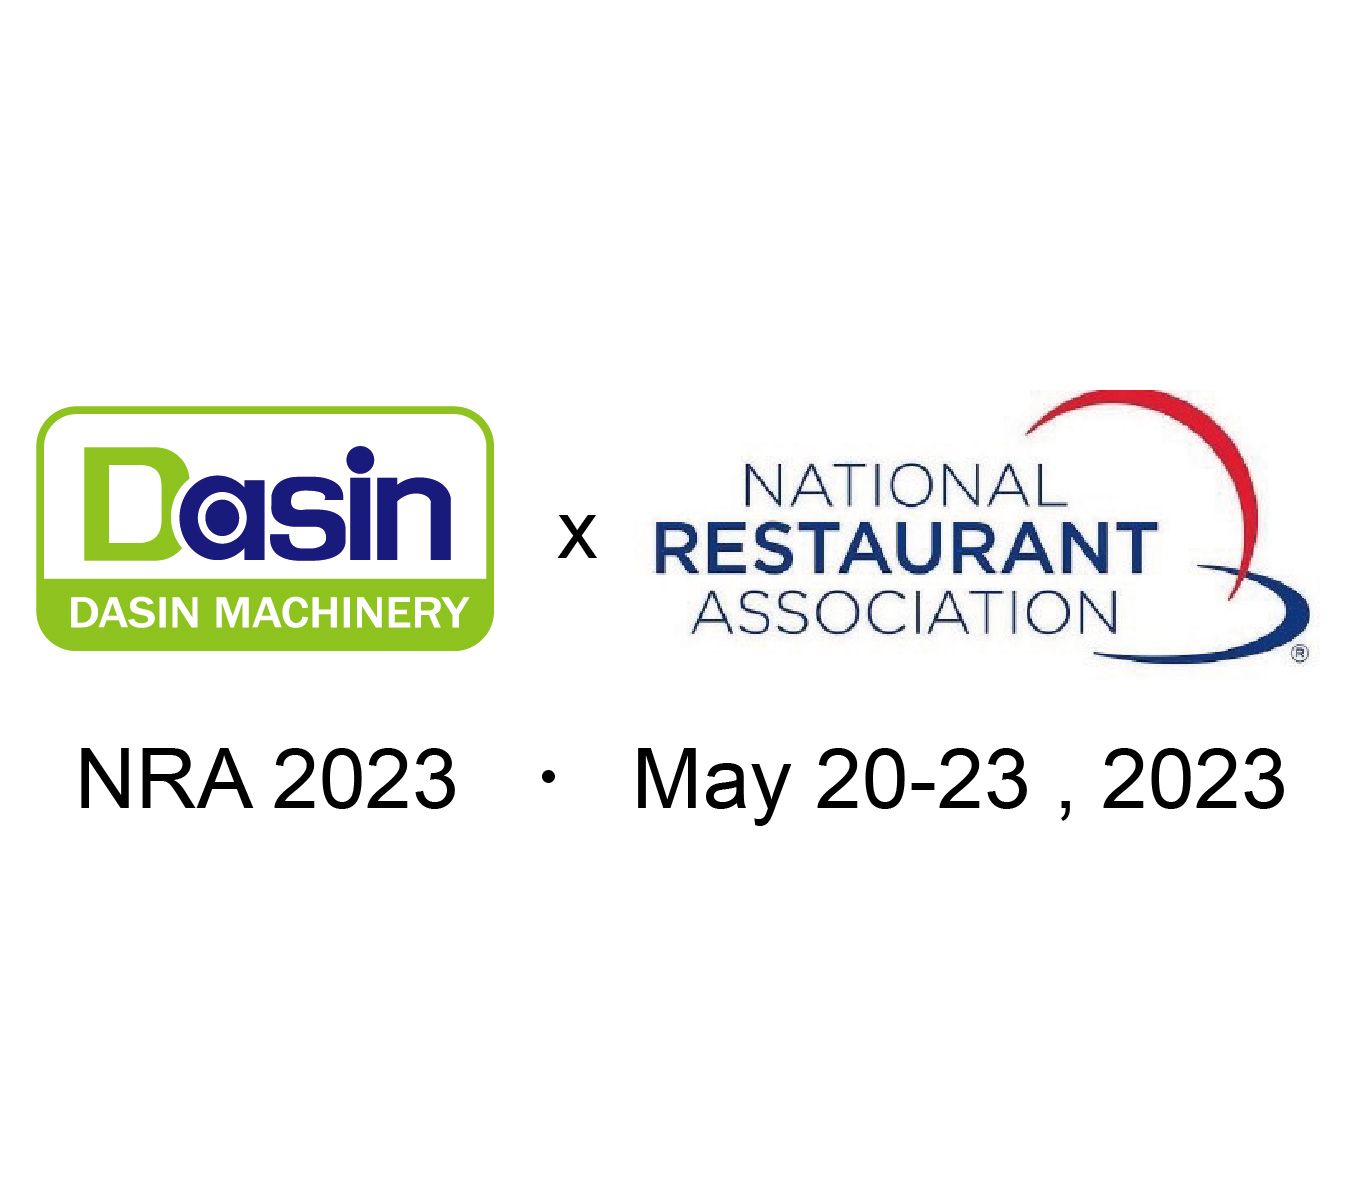 Dasin मशीनरी कंपनी, लिमिटेड 2023 NRA शो पर होगी